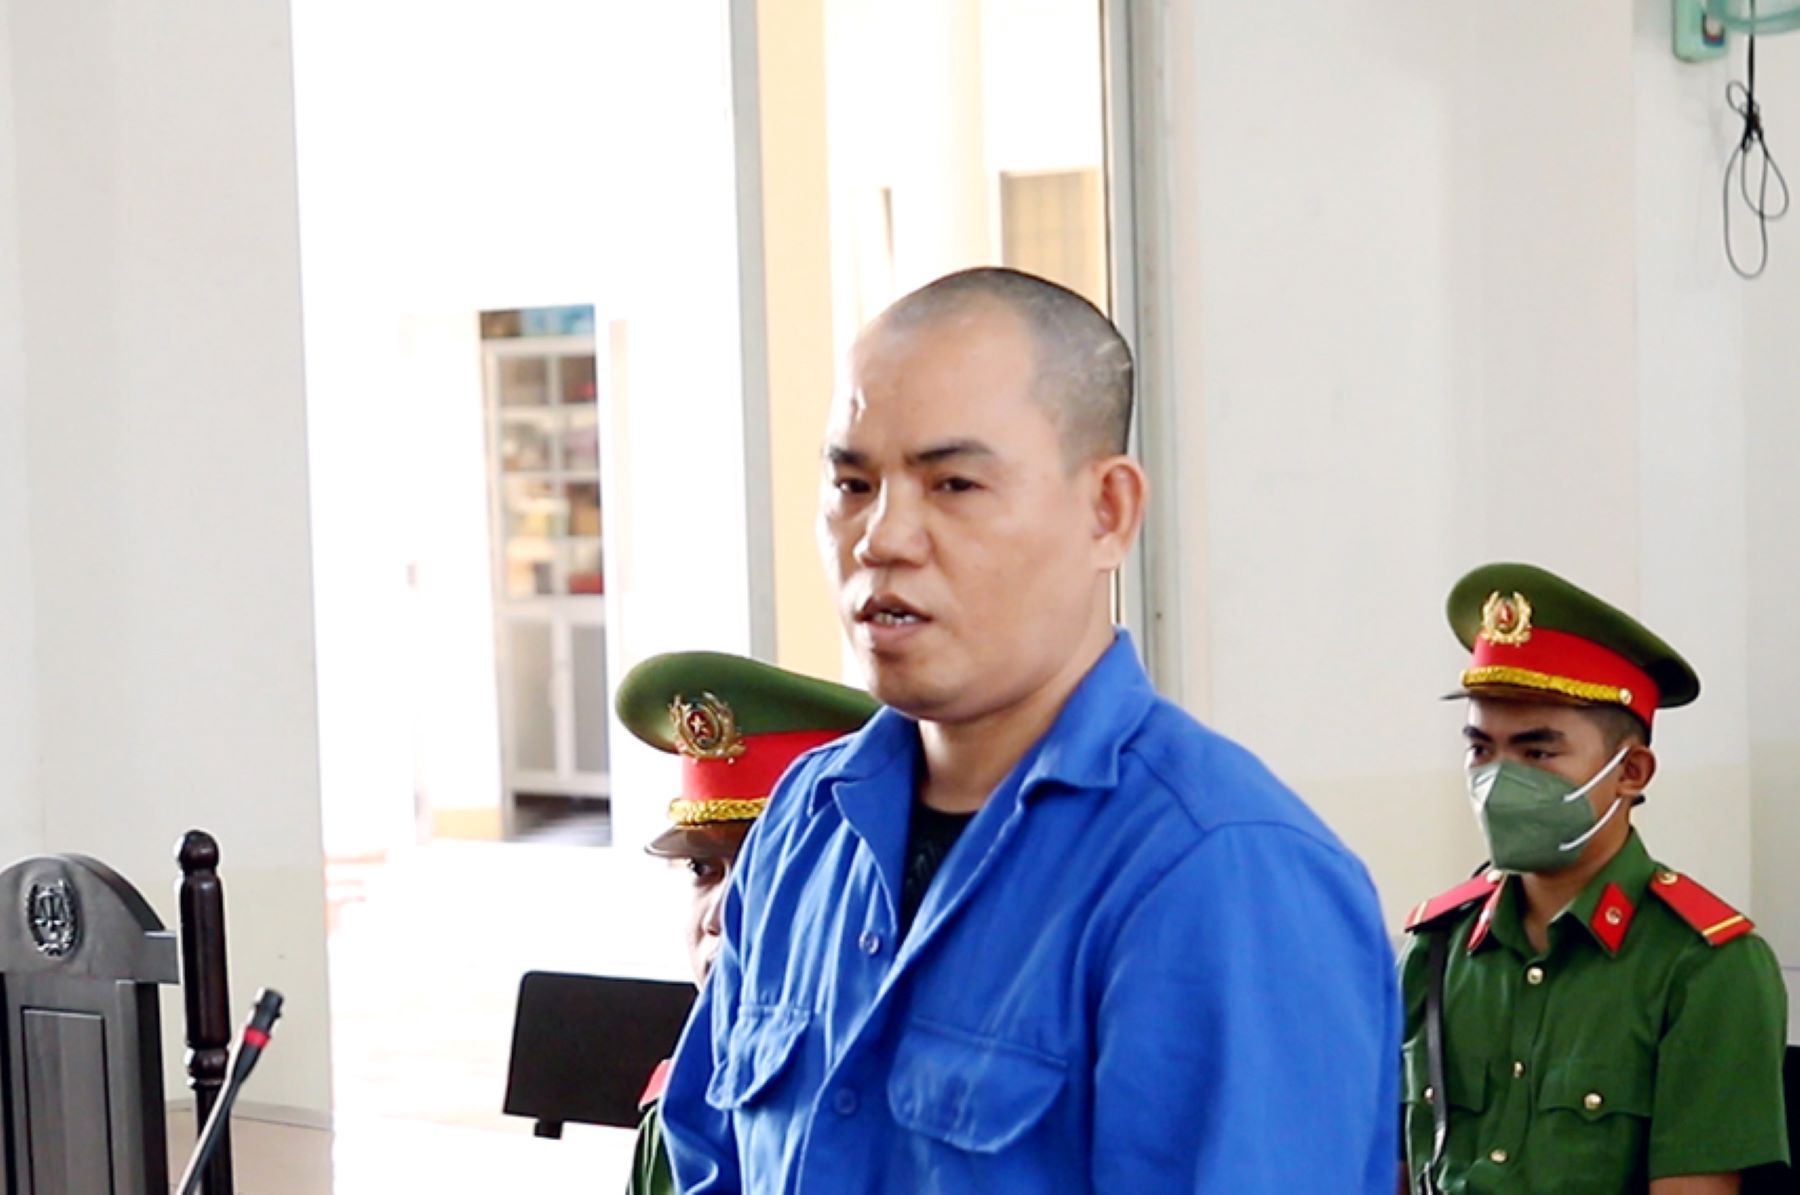 Đối tượng Trần Văn Nam bị tòa án tuyên phạt tử hình vì tội phóng hỏa làm chết 2 mẹ con người tình và hủy hoại tài sản. Ảnh: Vũ Tiến